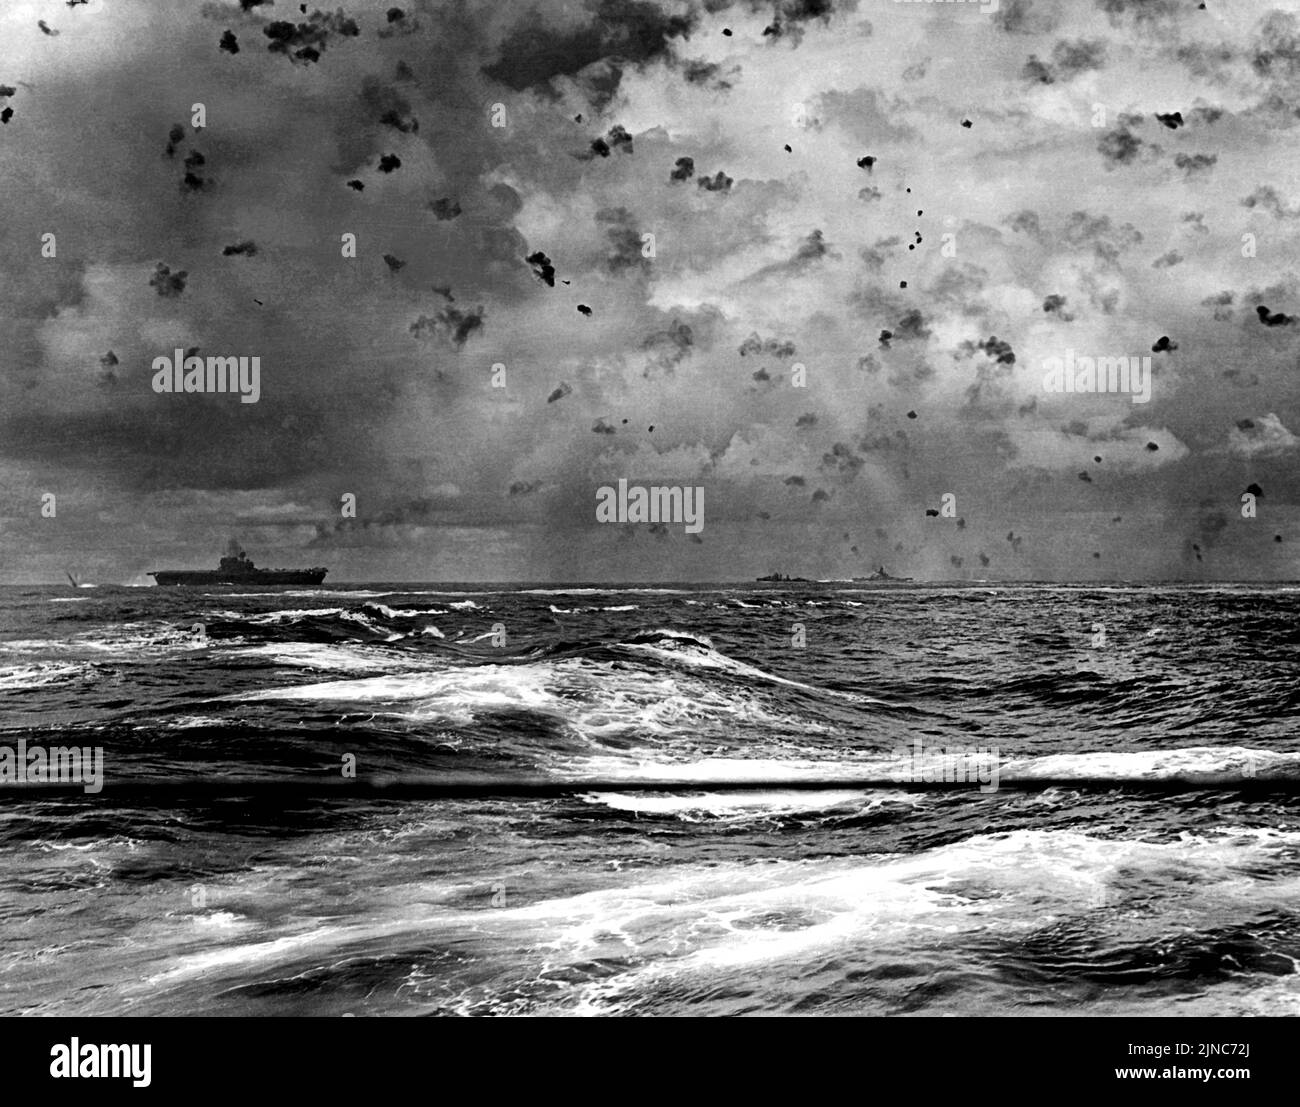 En una foto dramática de la acción el portaaviones USS Enterprise (CV-6) de la Marina de los EE.UU. Y otras naves de su pantalla en acción durante la Batalla de Santa Cruz, el 26 de octubre de 1942. Una bomba está explotando desde su popa, mientras que dos bombarderos de buceo japoneses son visibles directamente sobre el portador y hacia el centro de la imagen. Foto de stock